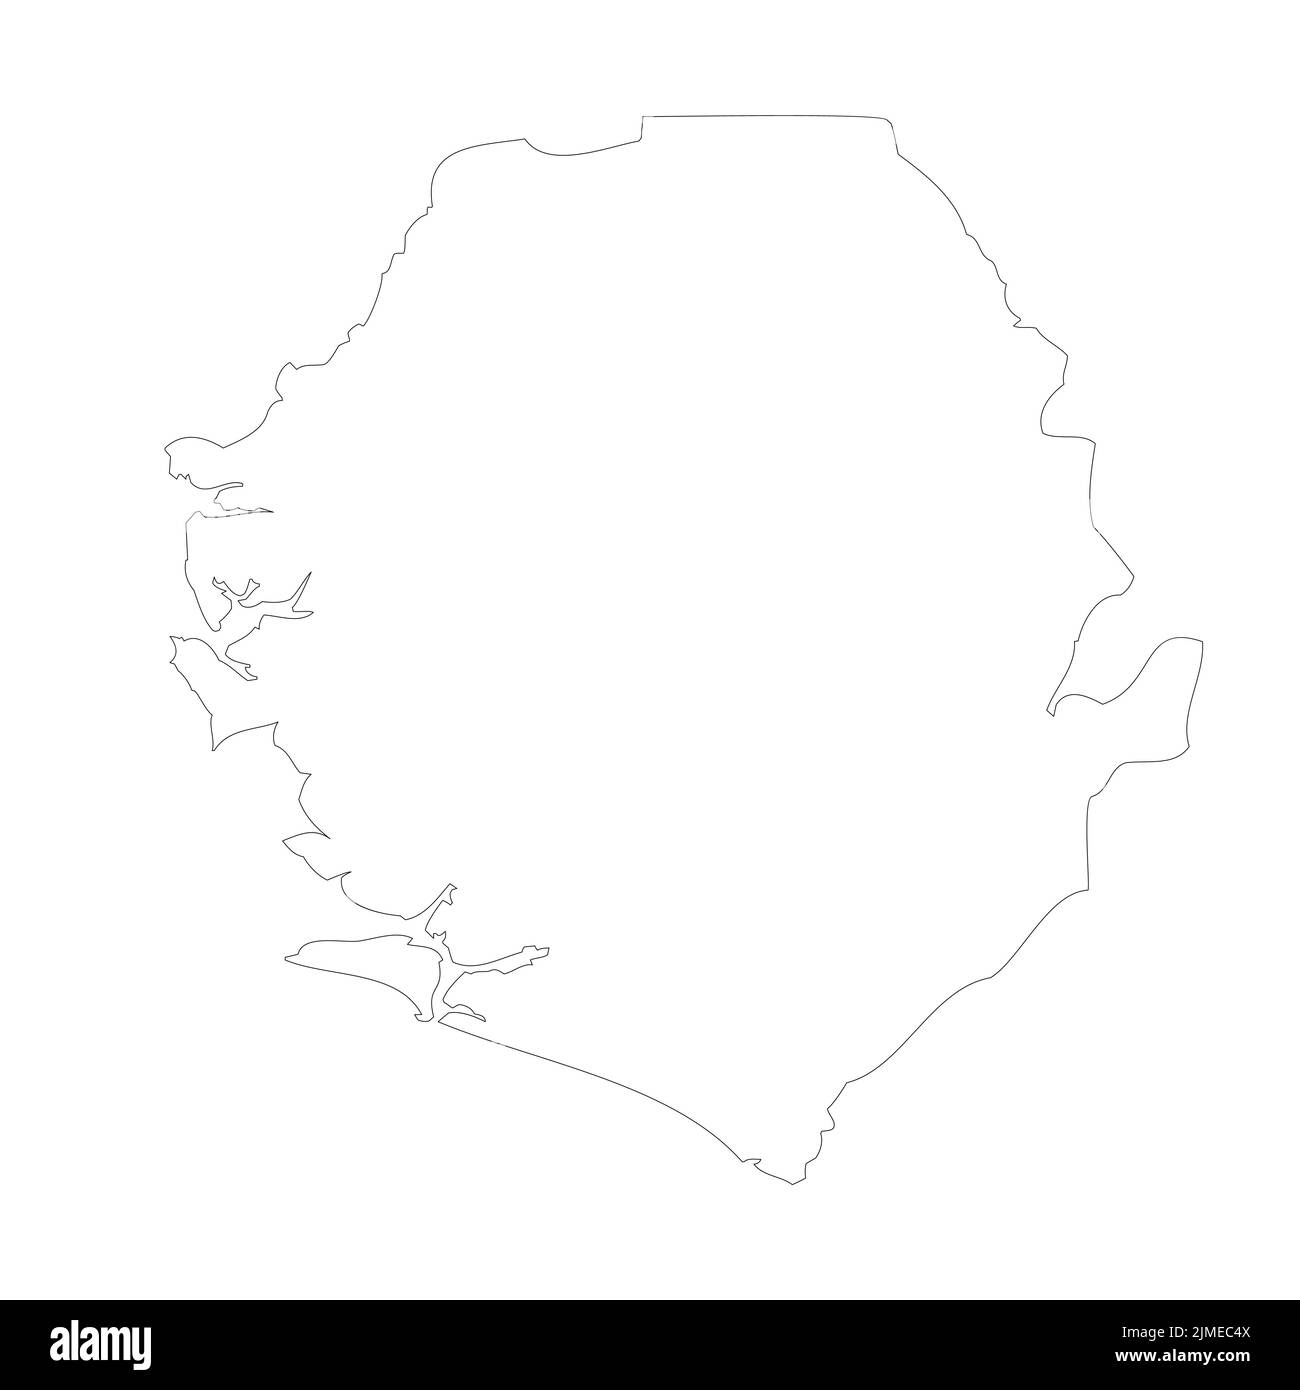 Sierra Leone Vektor-Landkarte Stock Vektor